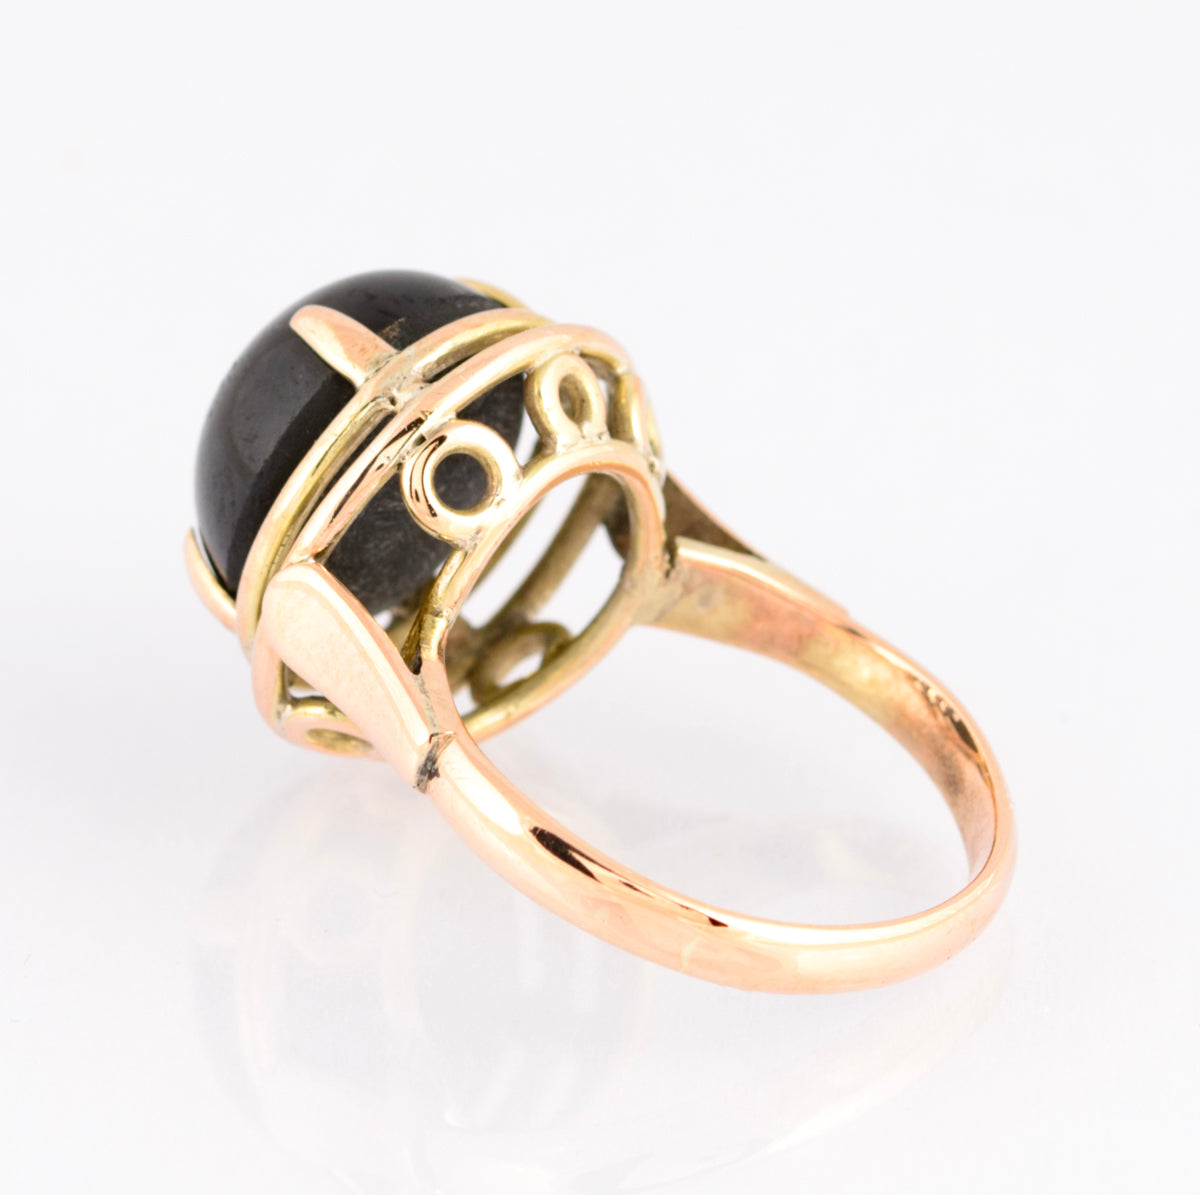 Vintage 9ct Gold & Black Star Diopside Cabochon Dress Ring UK Size L (A1512)